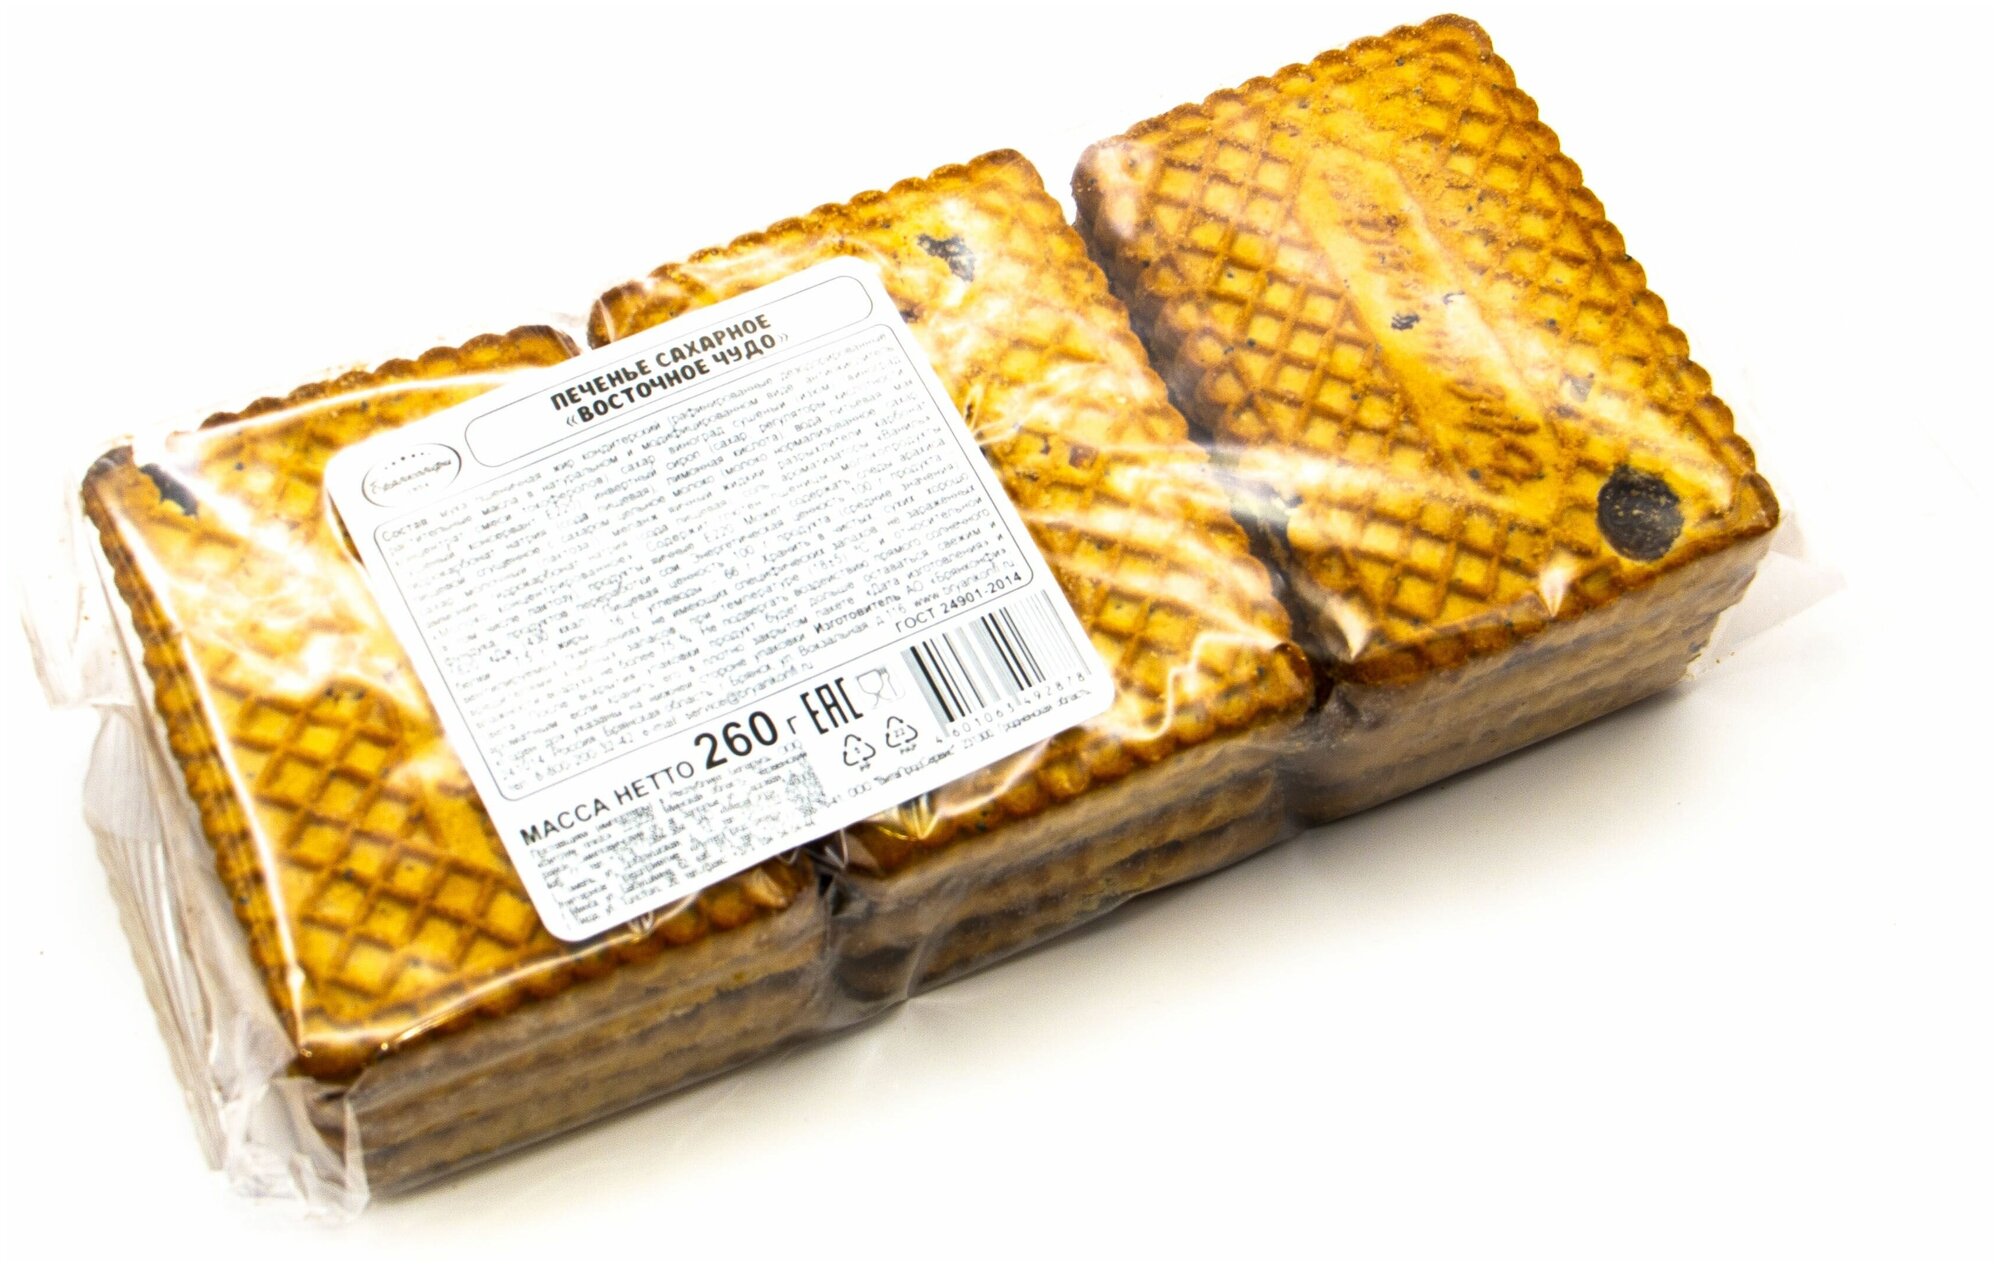 Печенье "Восточное чудо" сахарное Брянконфи с добавлением мака и изюма, 260 грамм, Изготовлено по ГОСТ 24901-2014, Артикул - 3042802